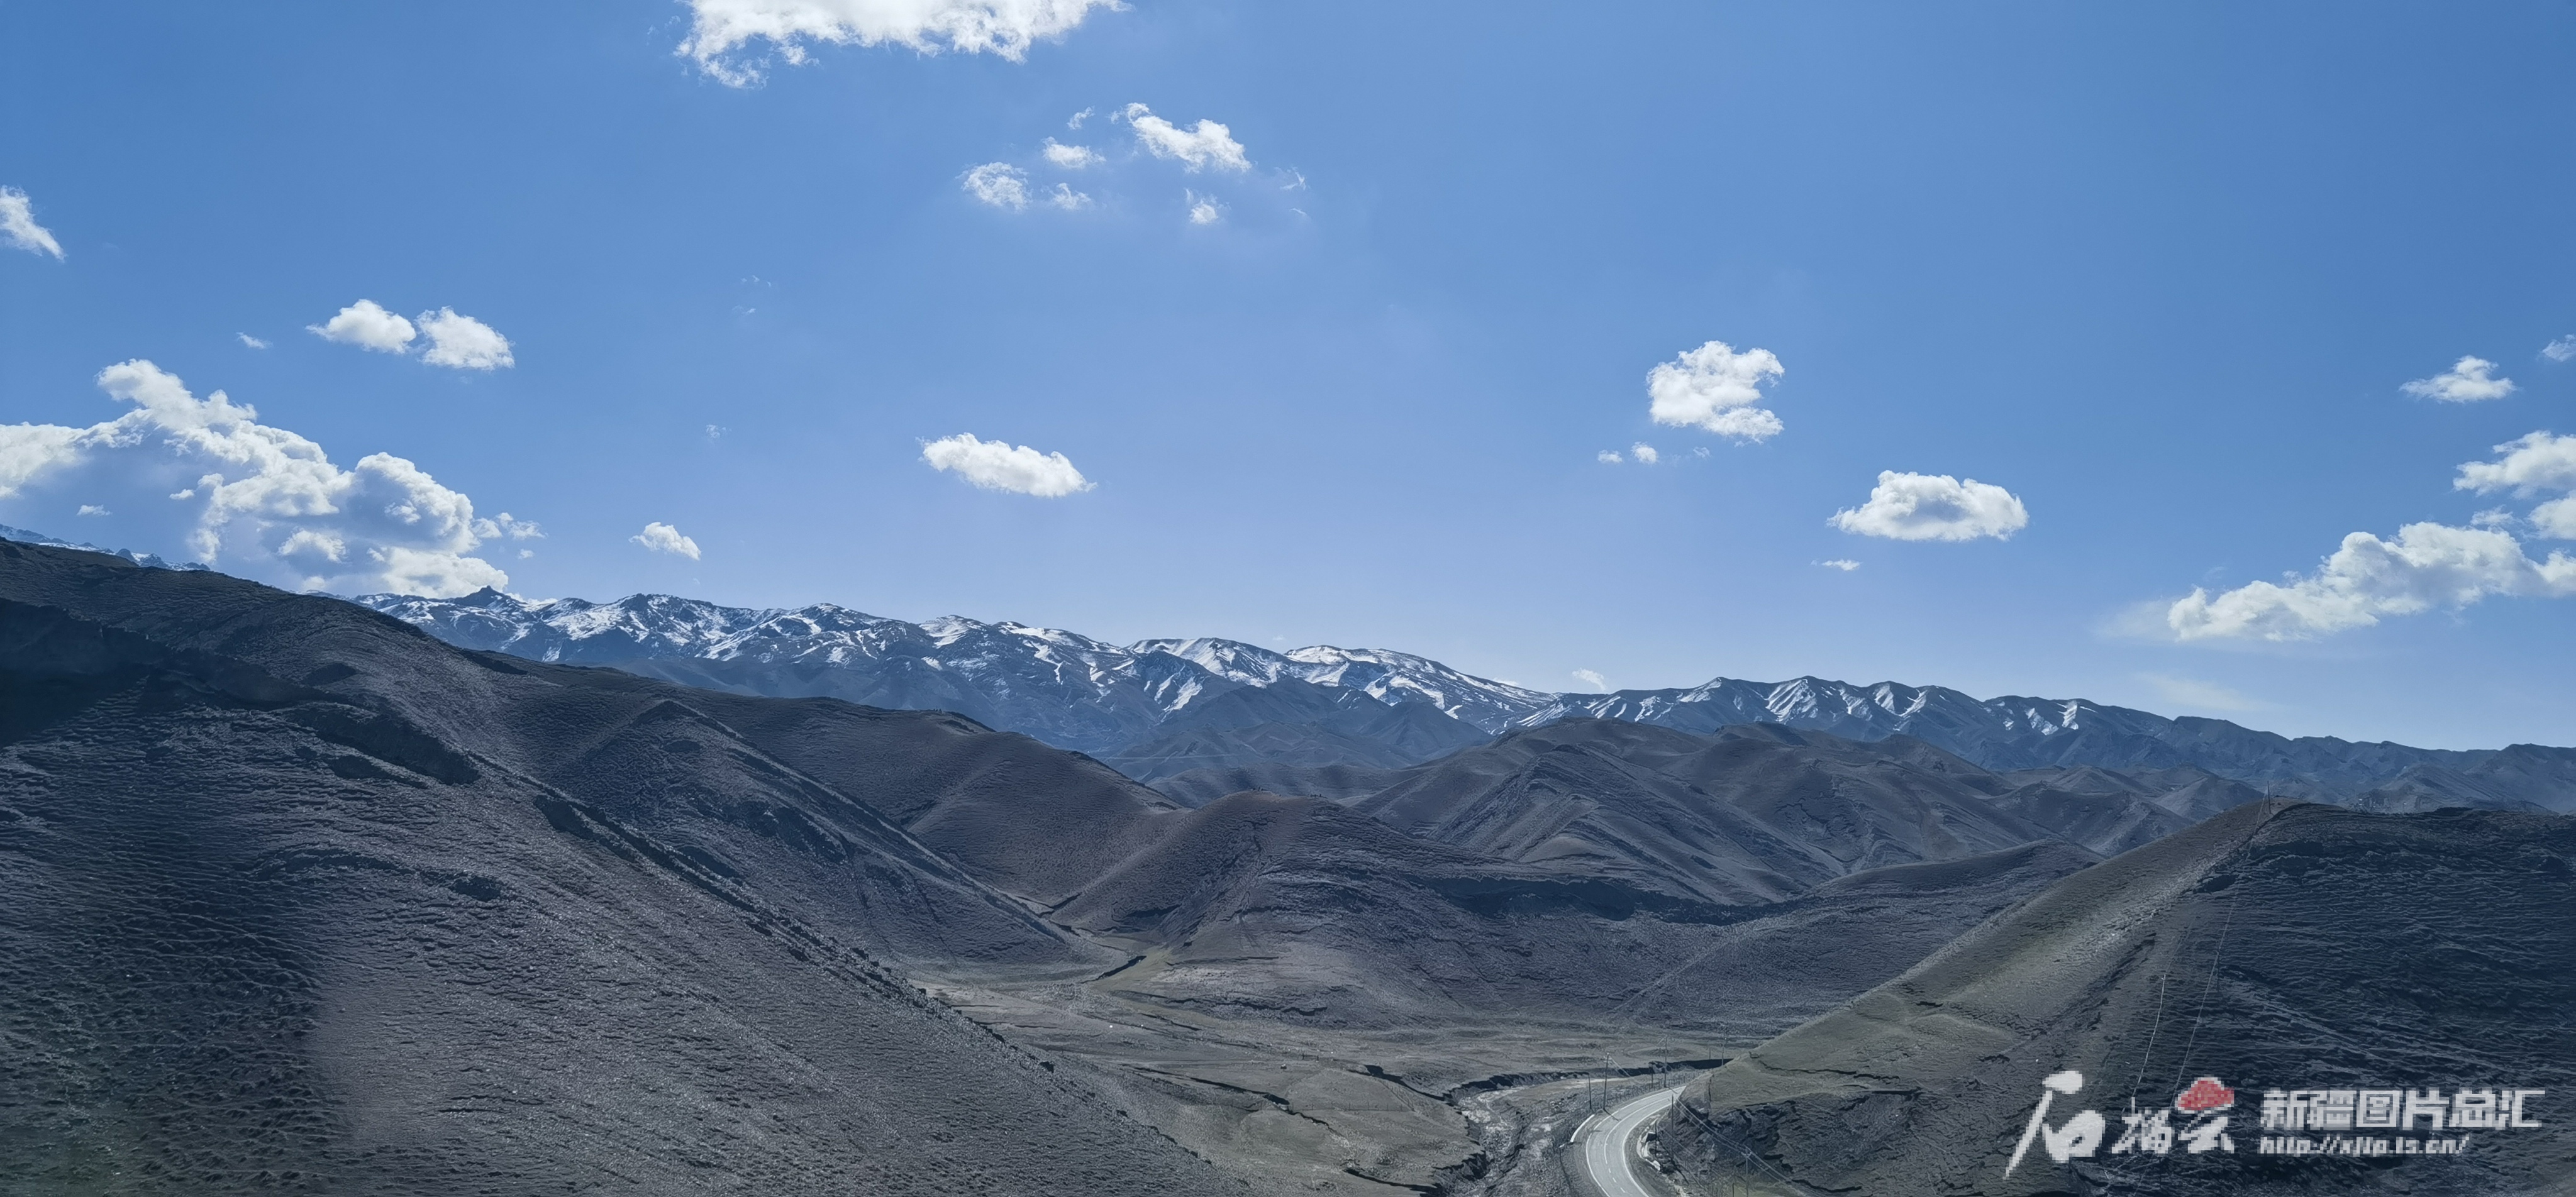 本周新疆有两场冷空气,北疆东疆或降温5℃—8